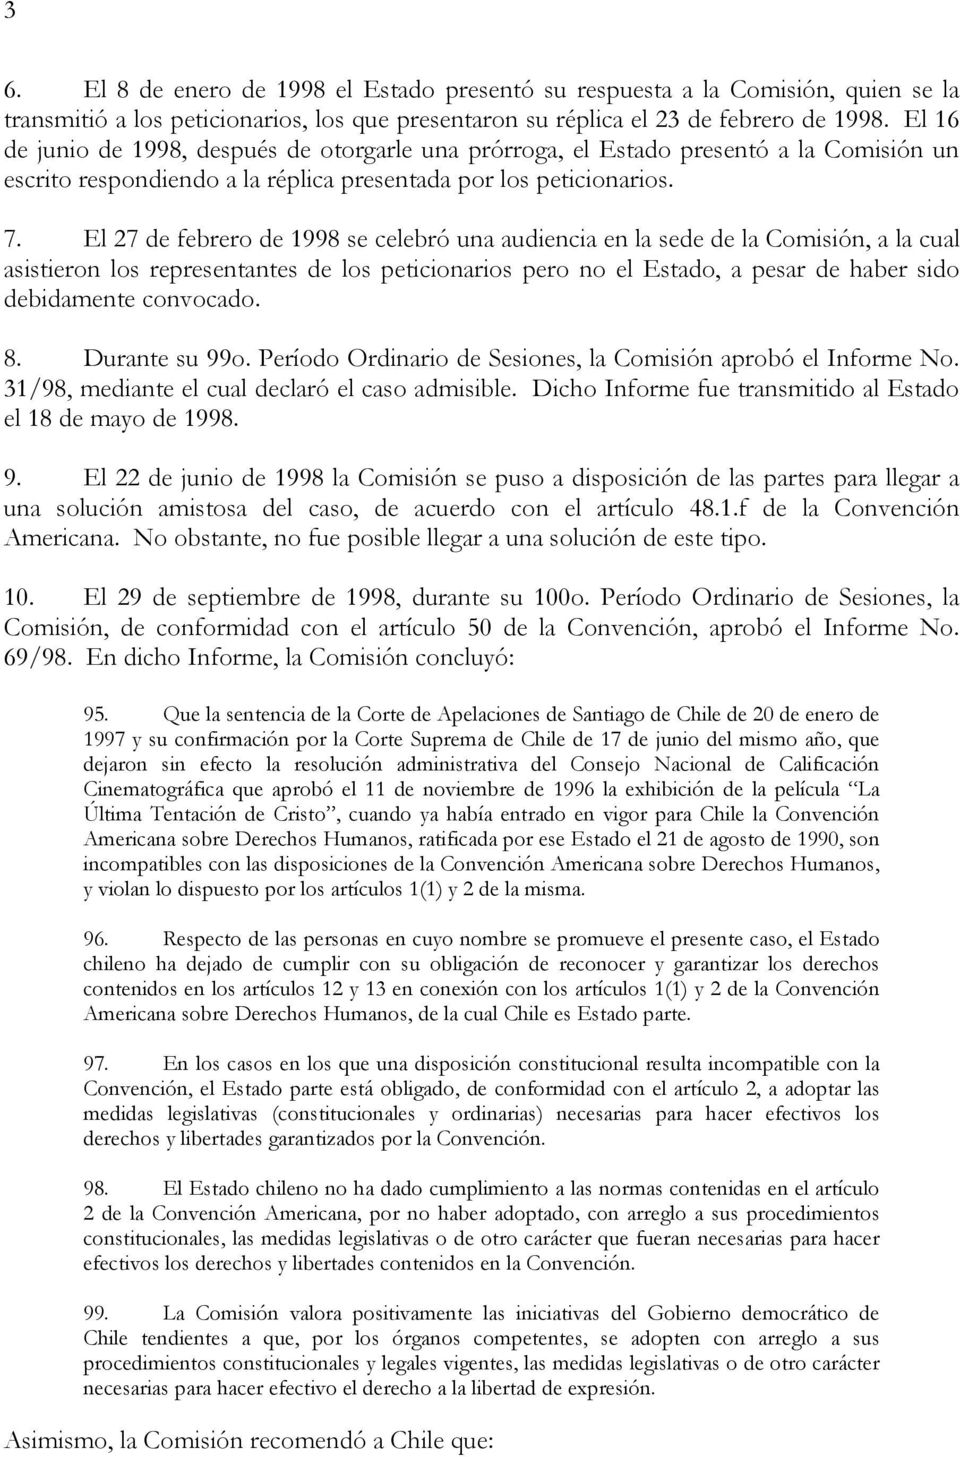 El 27 de febrero de 1998 se celebró una audiencia en la sede de la Comisión, a la cual asistieron los representantes de los peticionarios pero no el Estado, a pesar de haber sido debidamente